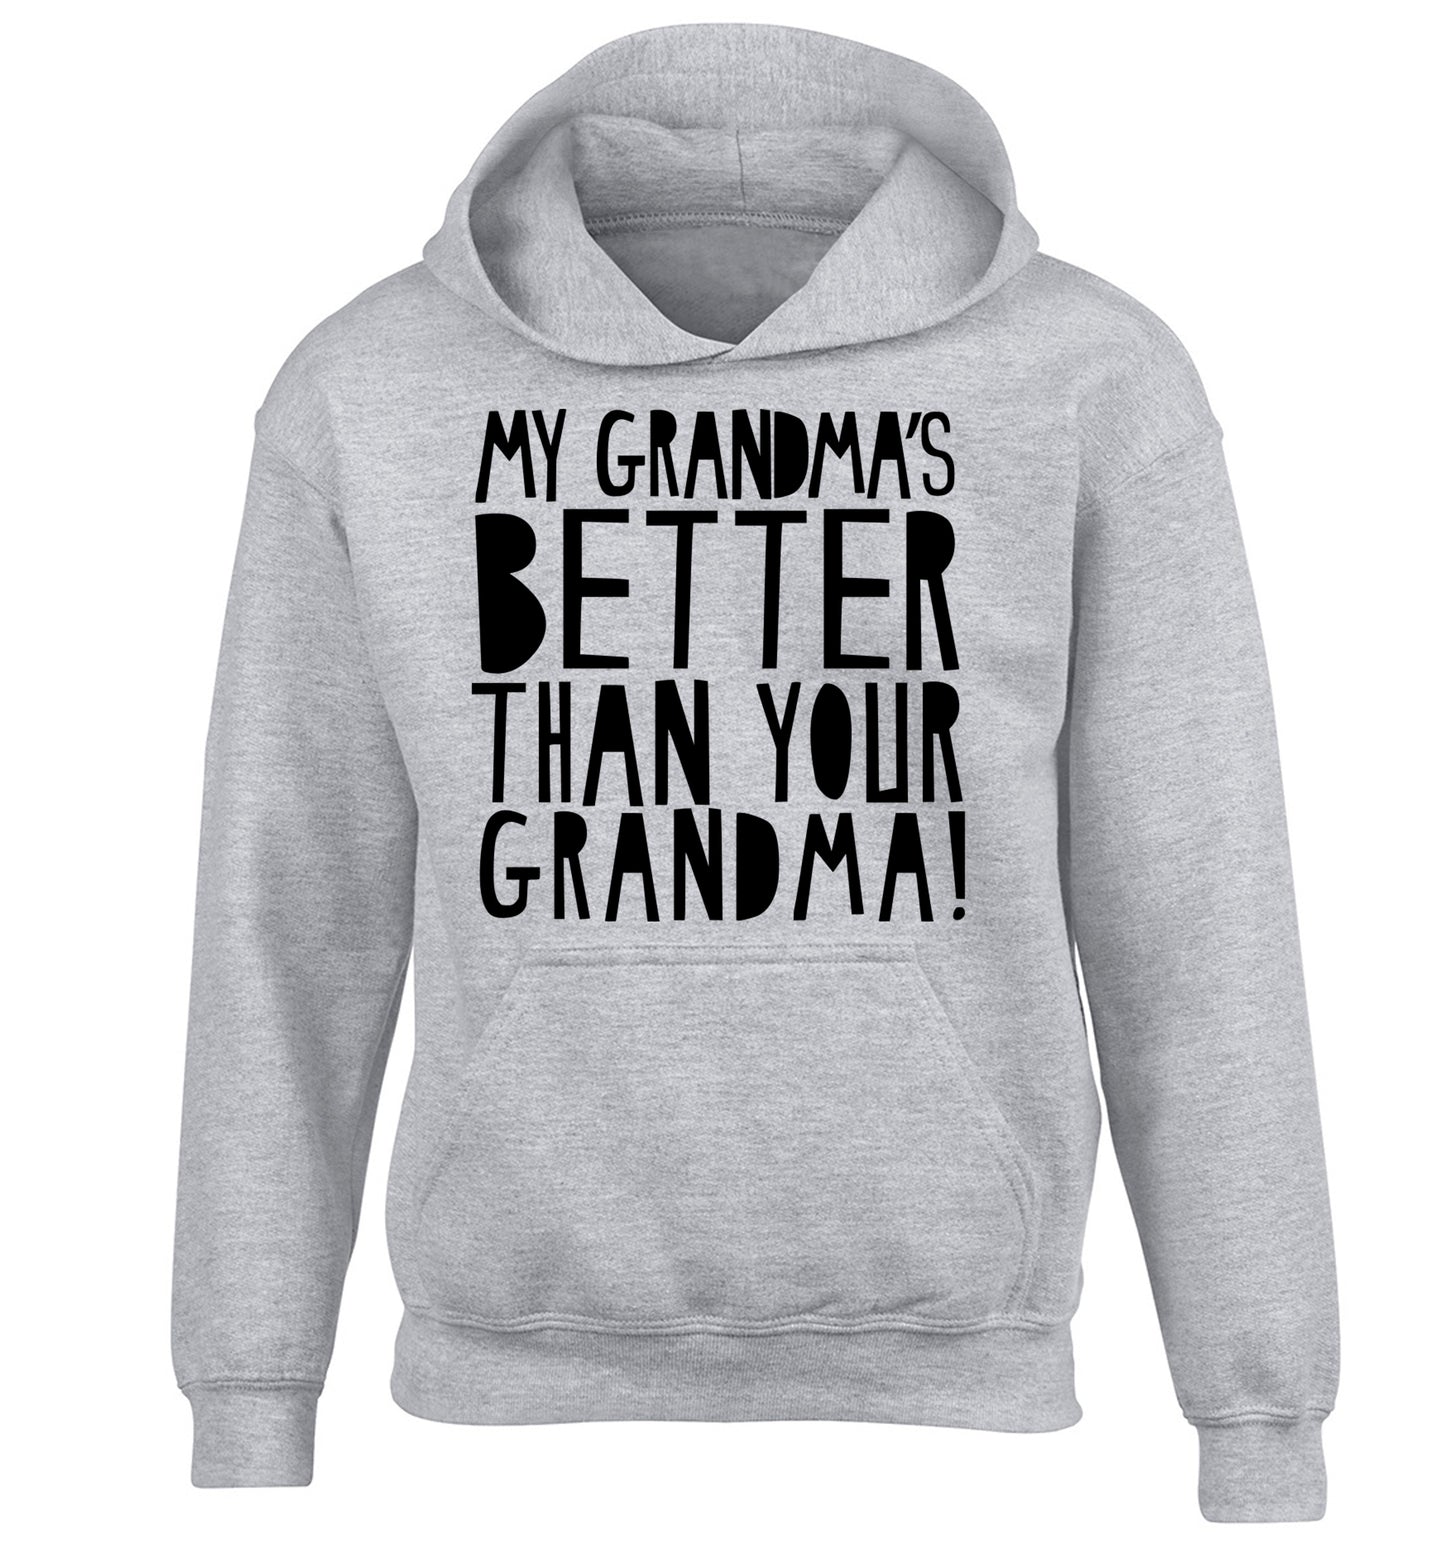 My grandma's better than your grandma children's grey hoodie 12-13 Years